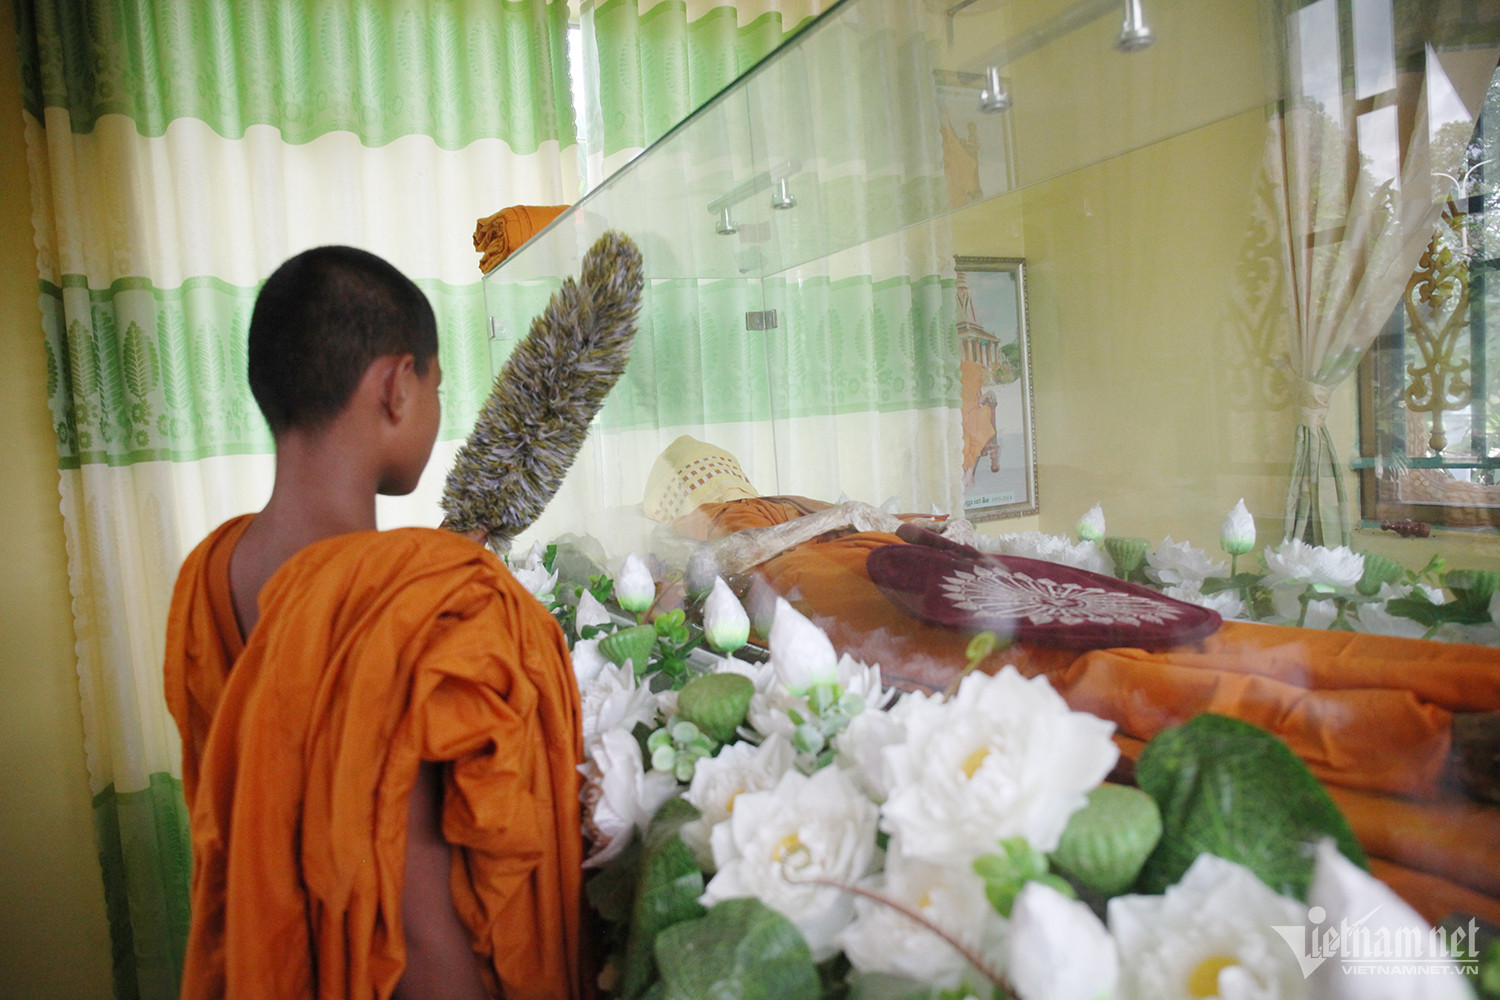 Thi thể Hoà thượng Chau Tinh được đặt trong lồng kính, thường xuyên có người đến chăm sóc, nhang khói.